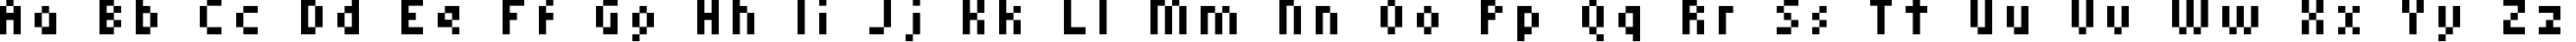 Пример написания английского алфавита шрифтом kroeger 05_58